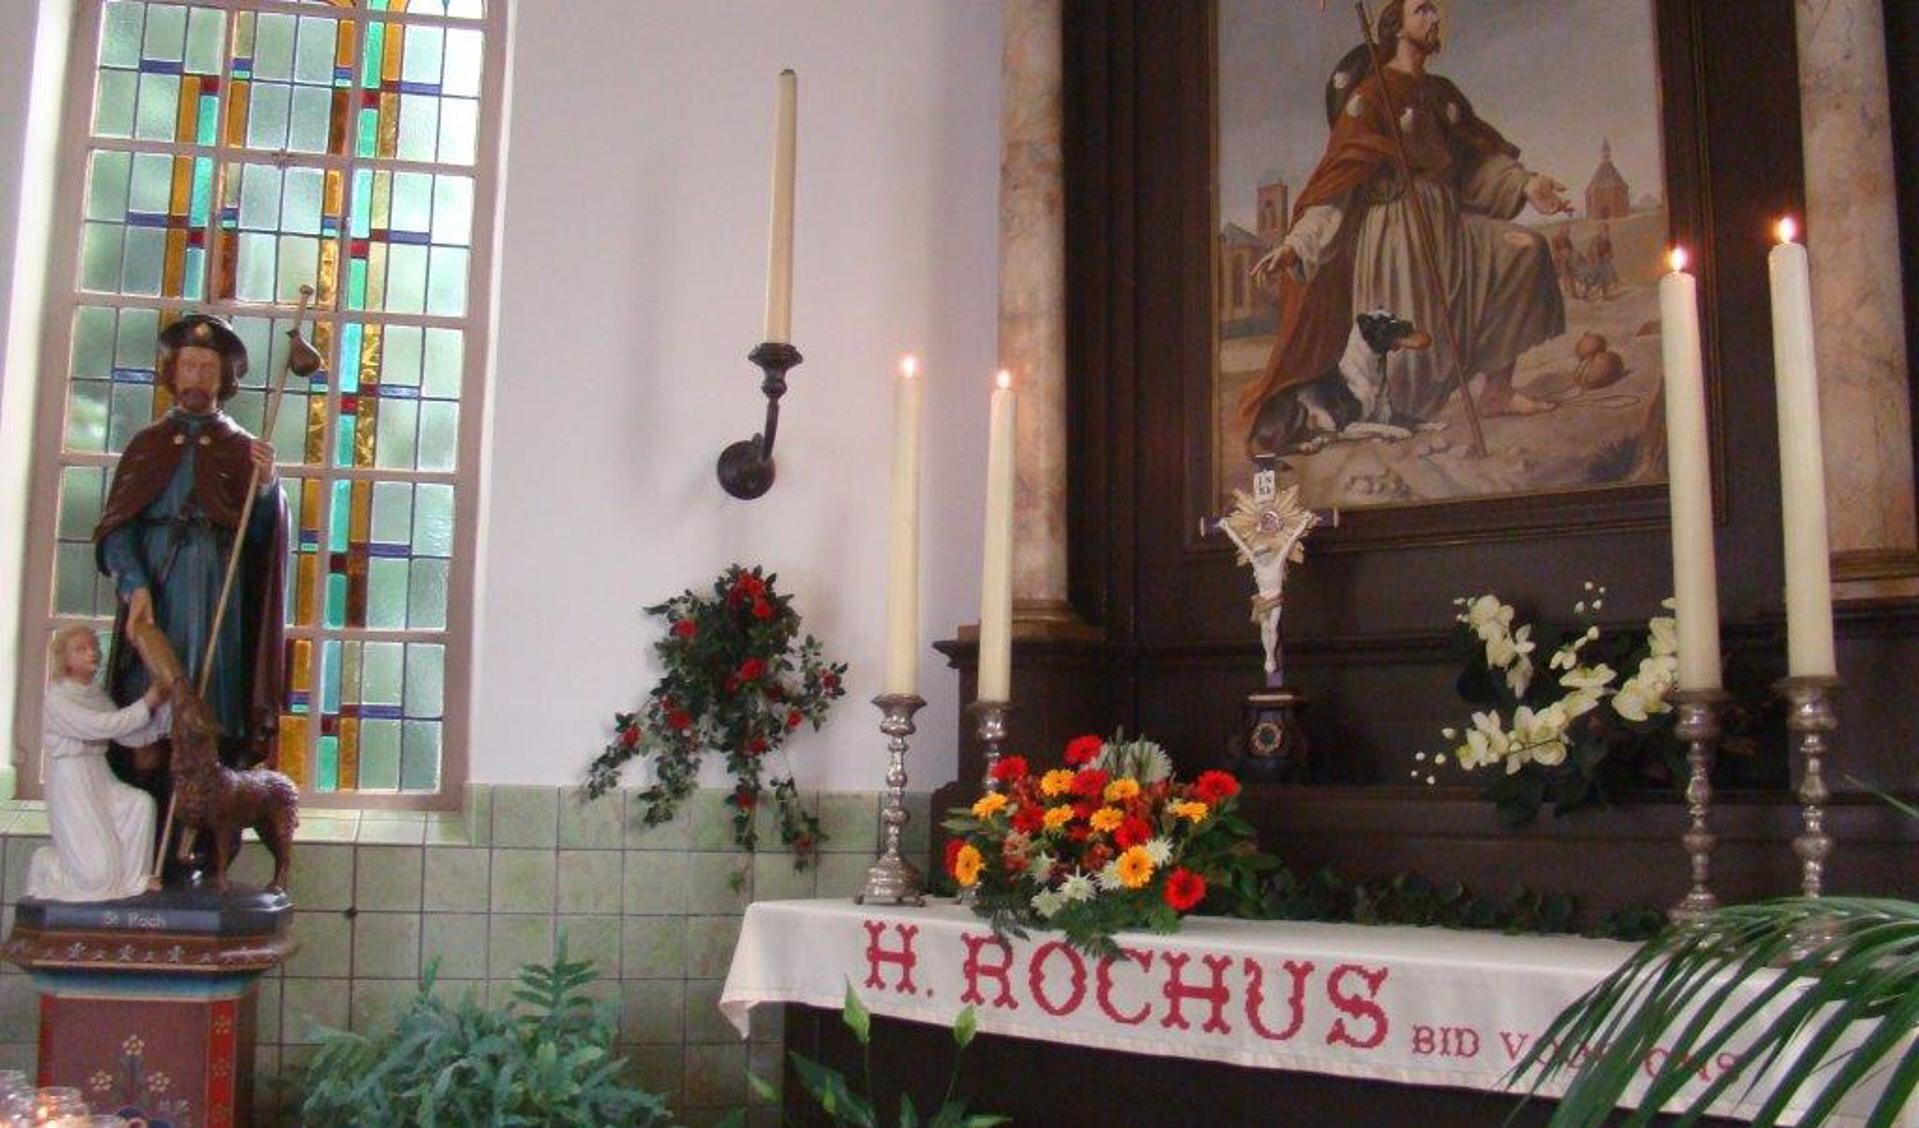 Het jaarlijkse St. Rochusfeest in Deursen.